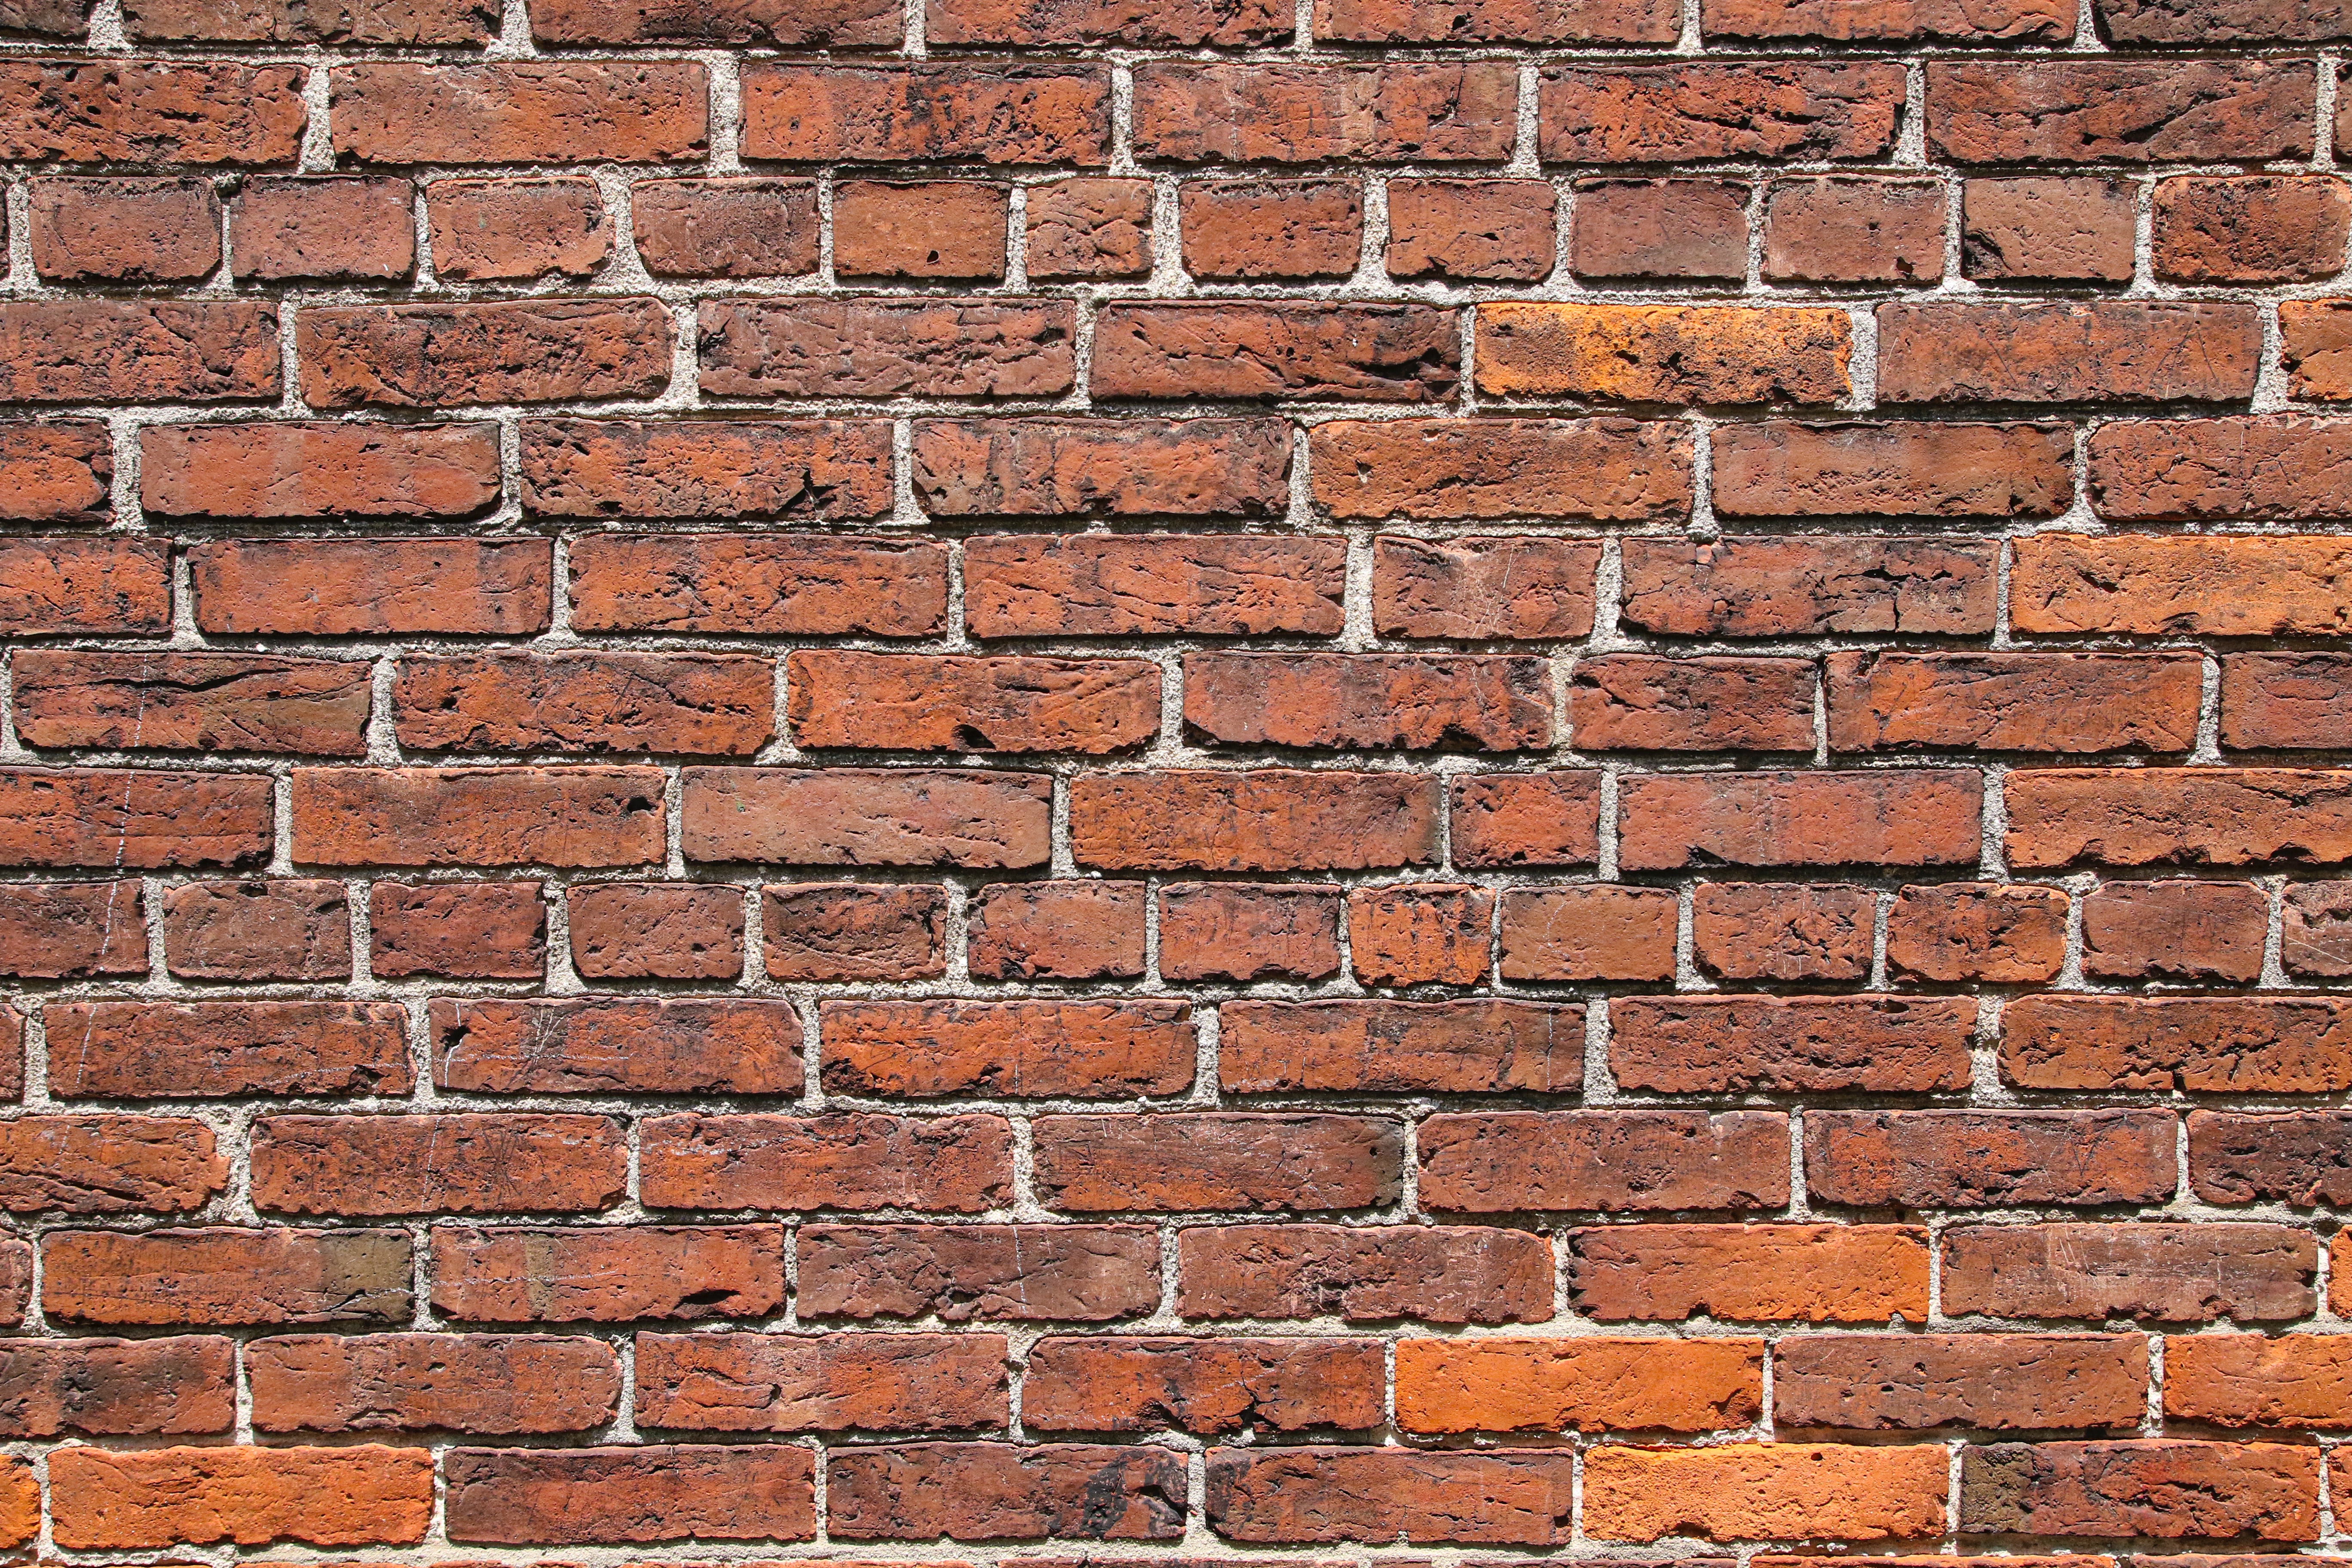 bricks, texture, red, textures, wall, brick wall